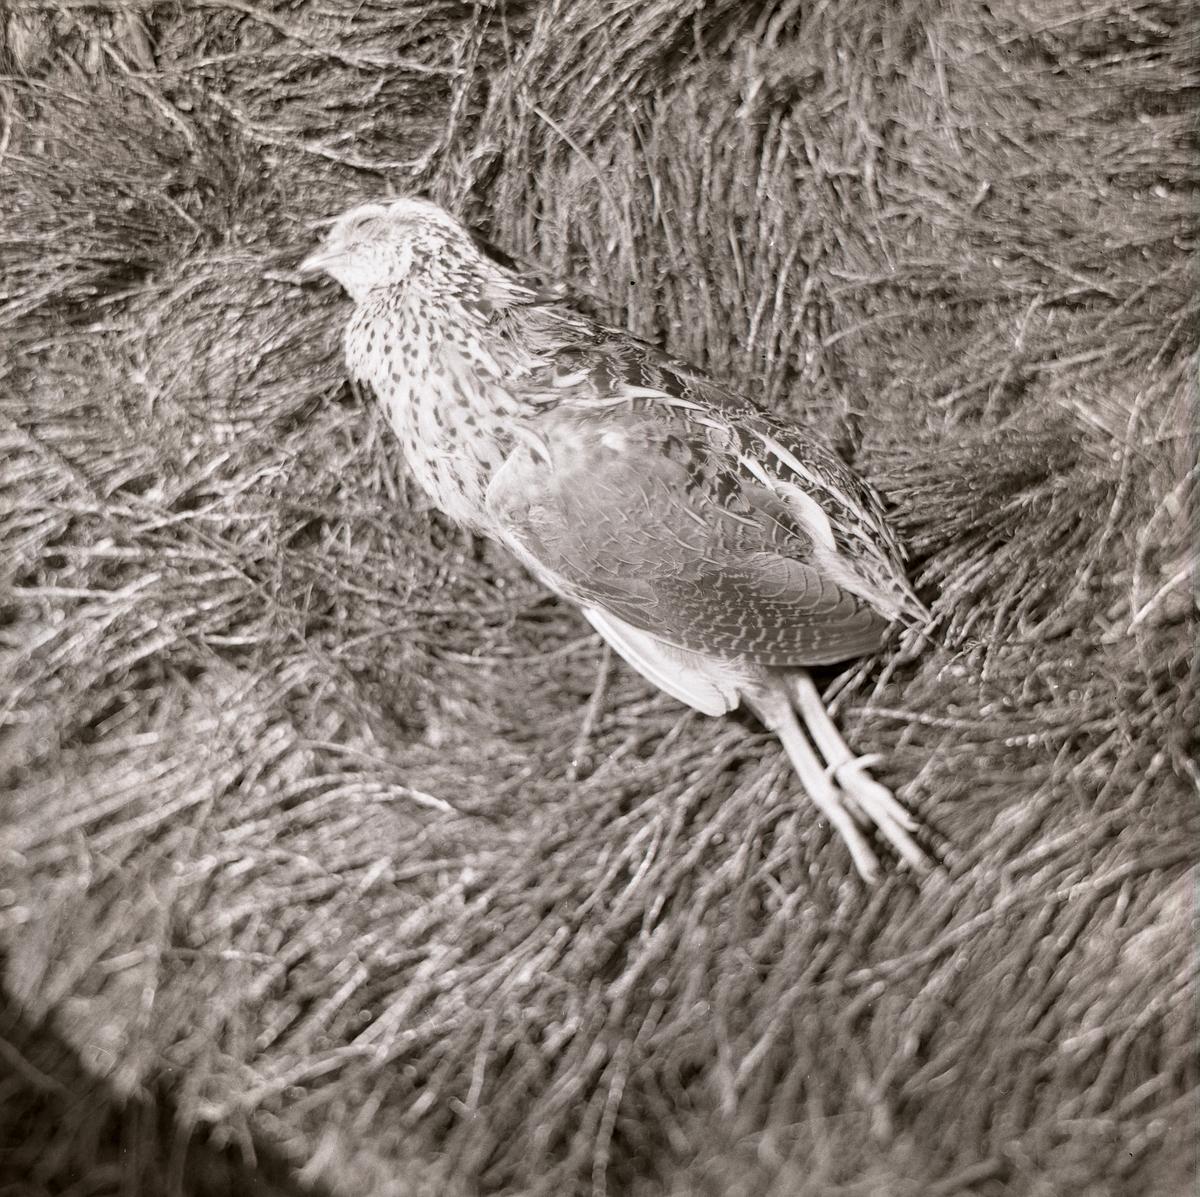 Stilla ligger den döda vakteln i gräset. Nedlagd på sidan utstrålar den frid och lugn fastän benen pekar rakt ned. I anslutning till bilden har Mickelsson skrivit att fågeln fallit offer för telefonledningen 1972.